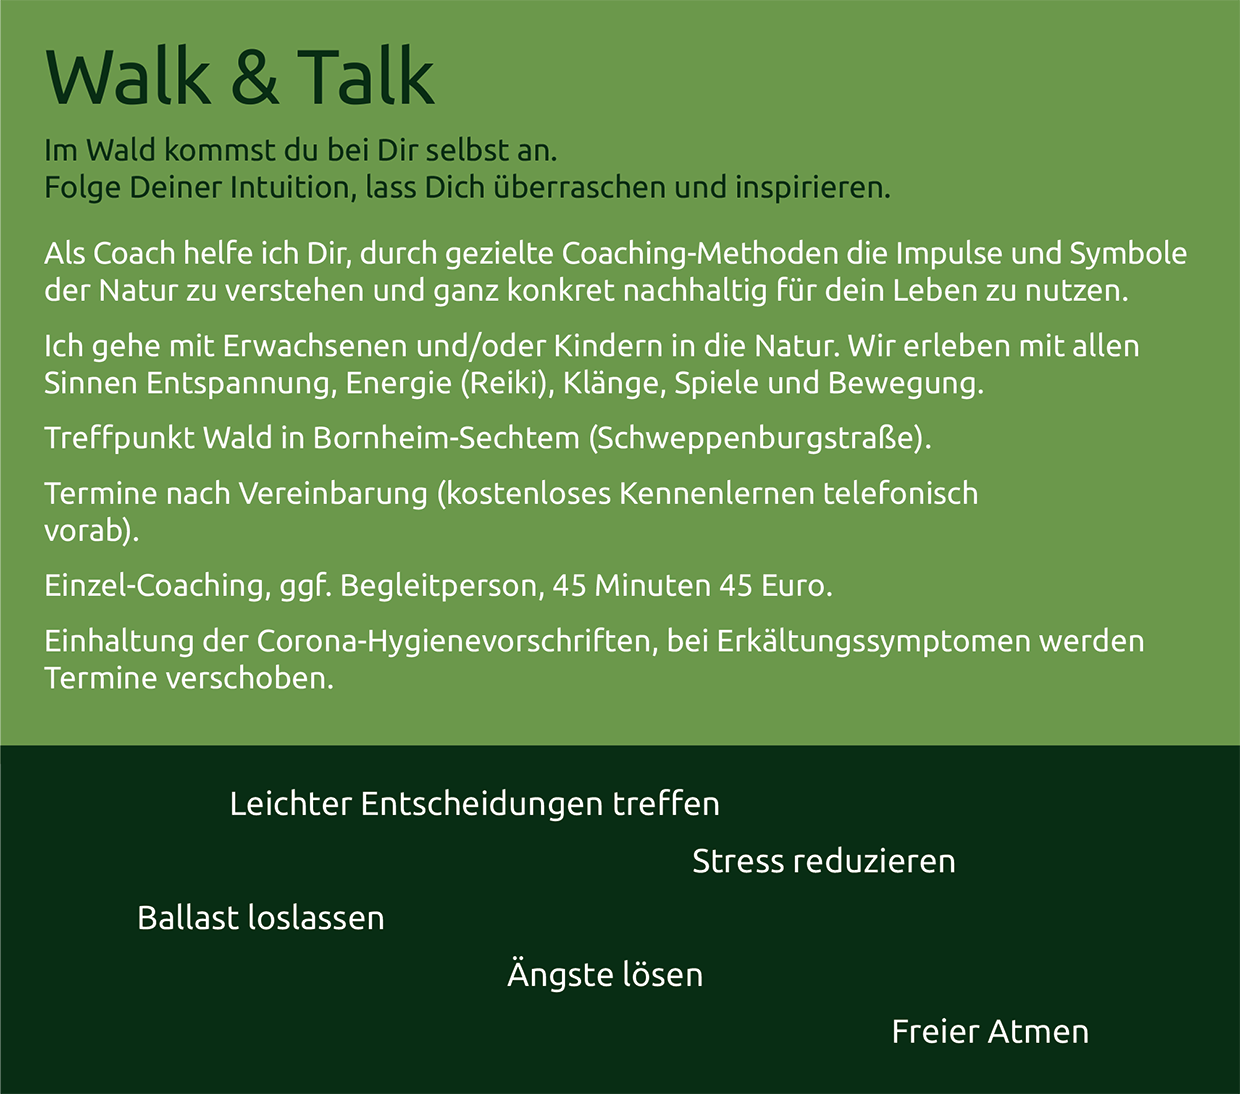 walk-talk.png